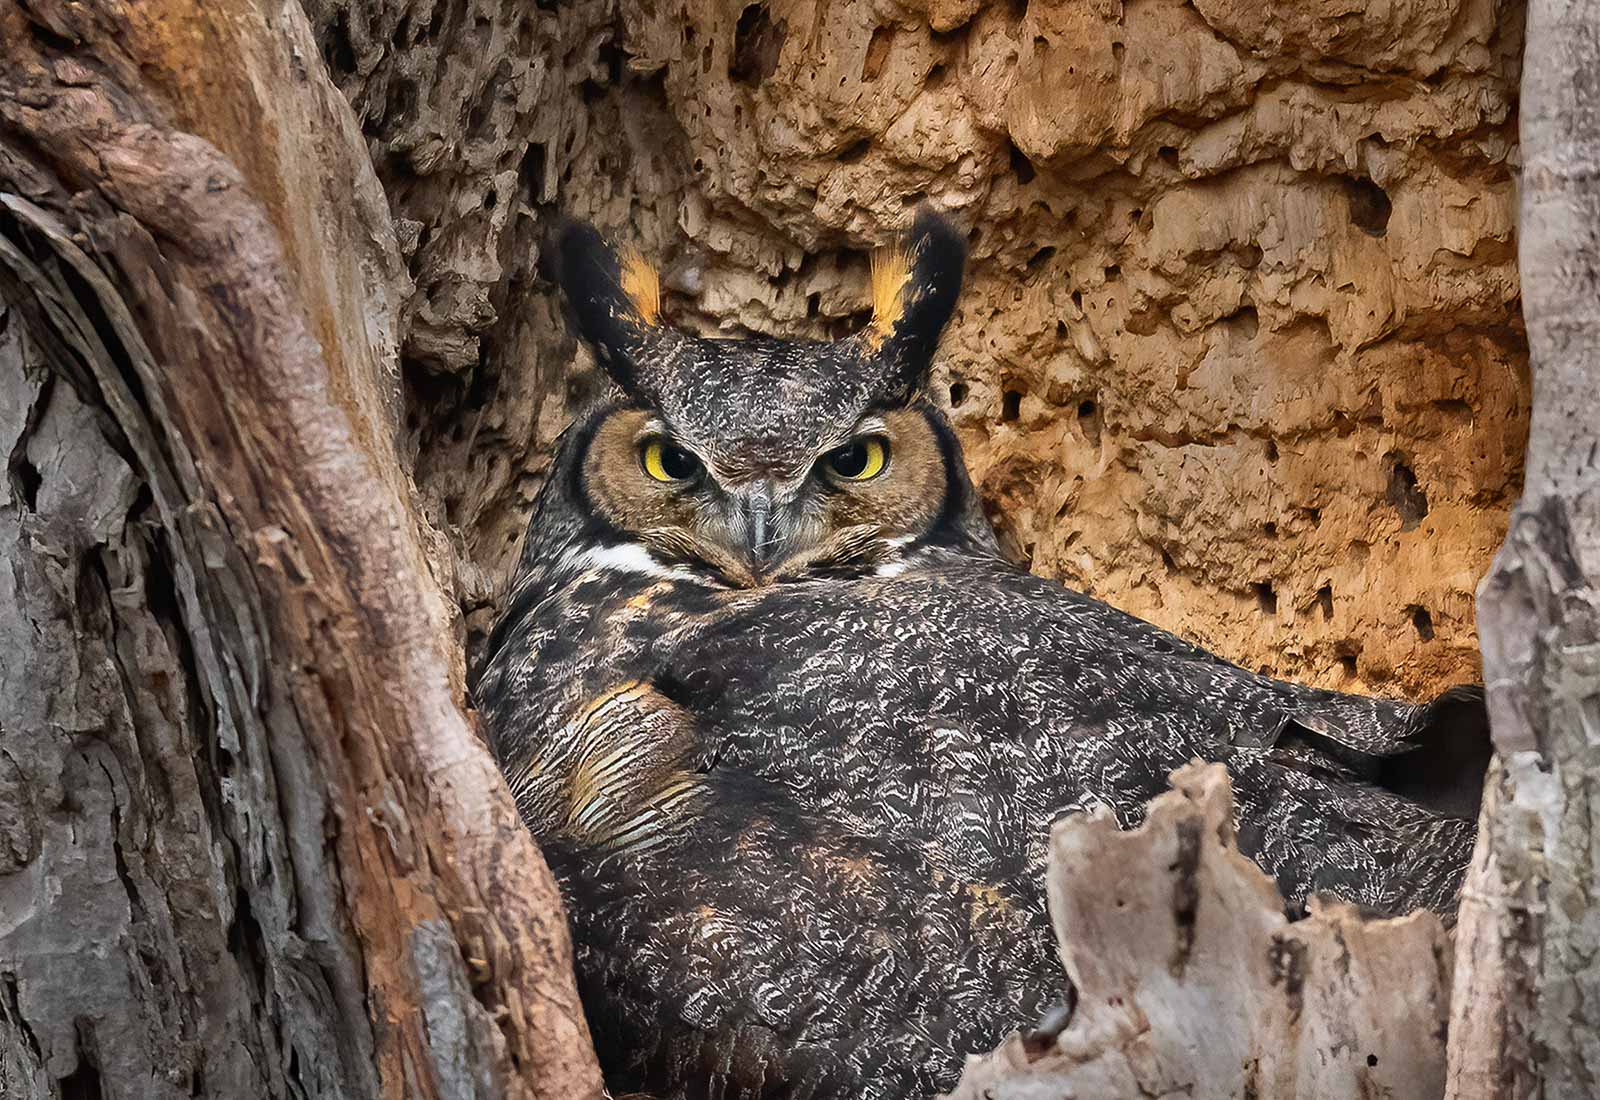 Great Horned Owl on her nest